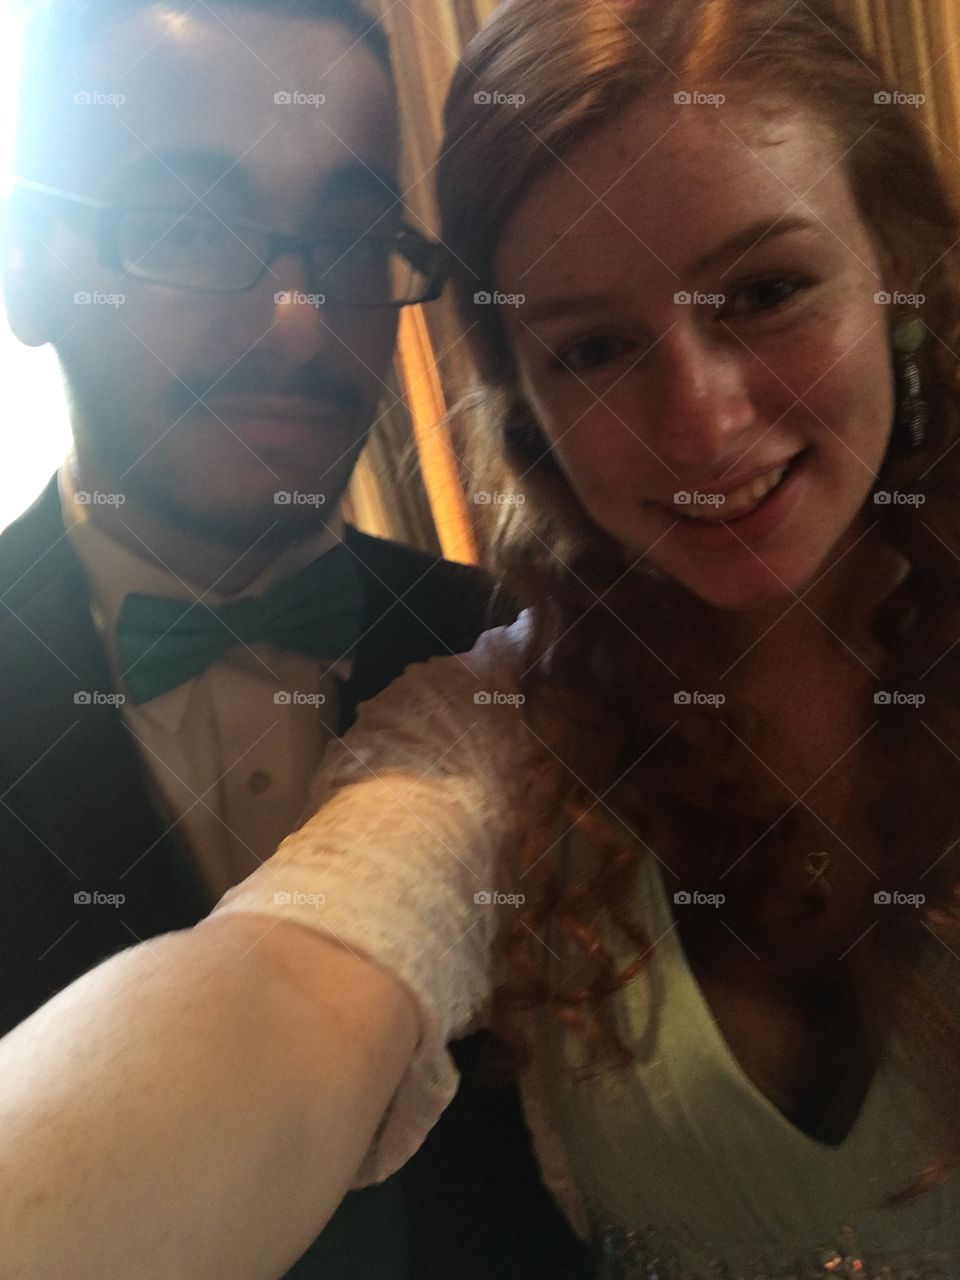 Selfie in prom